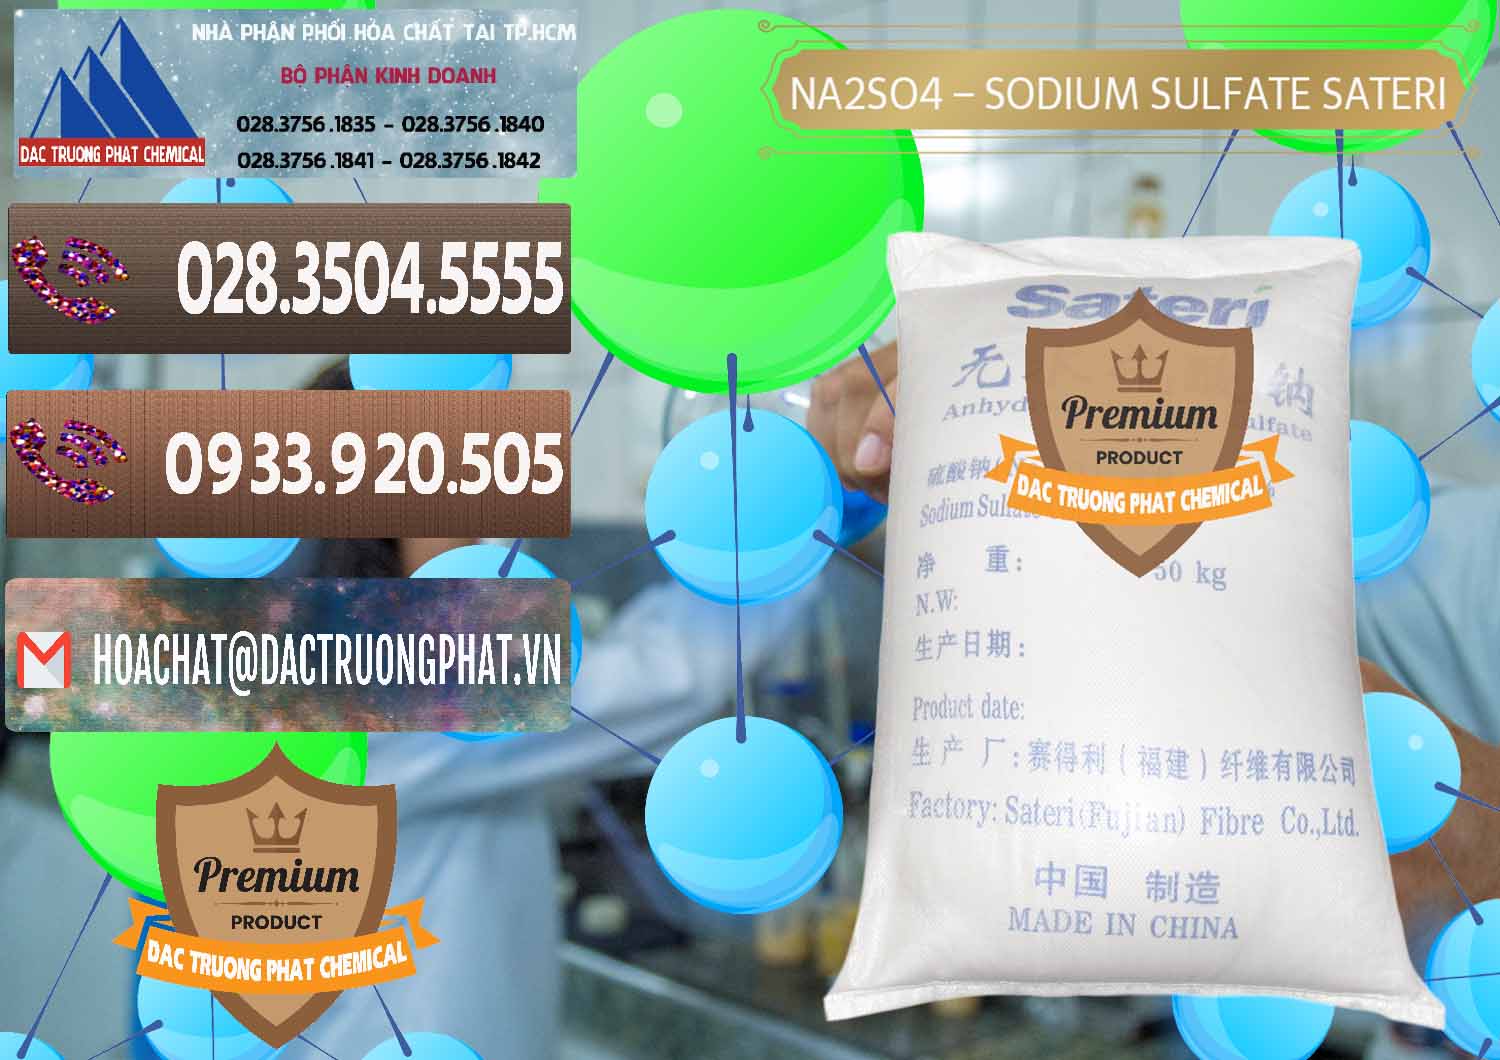 Cty chuyên bán - cung ứng Sodium Sulphate - Muối Sunfat Na2SO4 Sateri Trung Quốc China - 0100 - Công ty nhập khẩu - phân phối hóa chất tại TP.HCM - hoachatviet.net